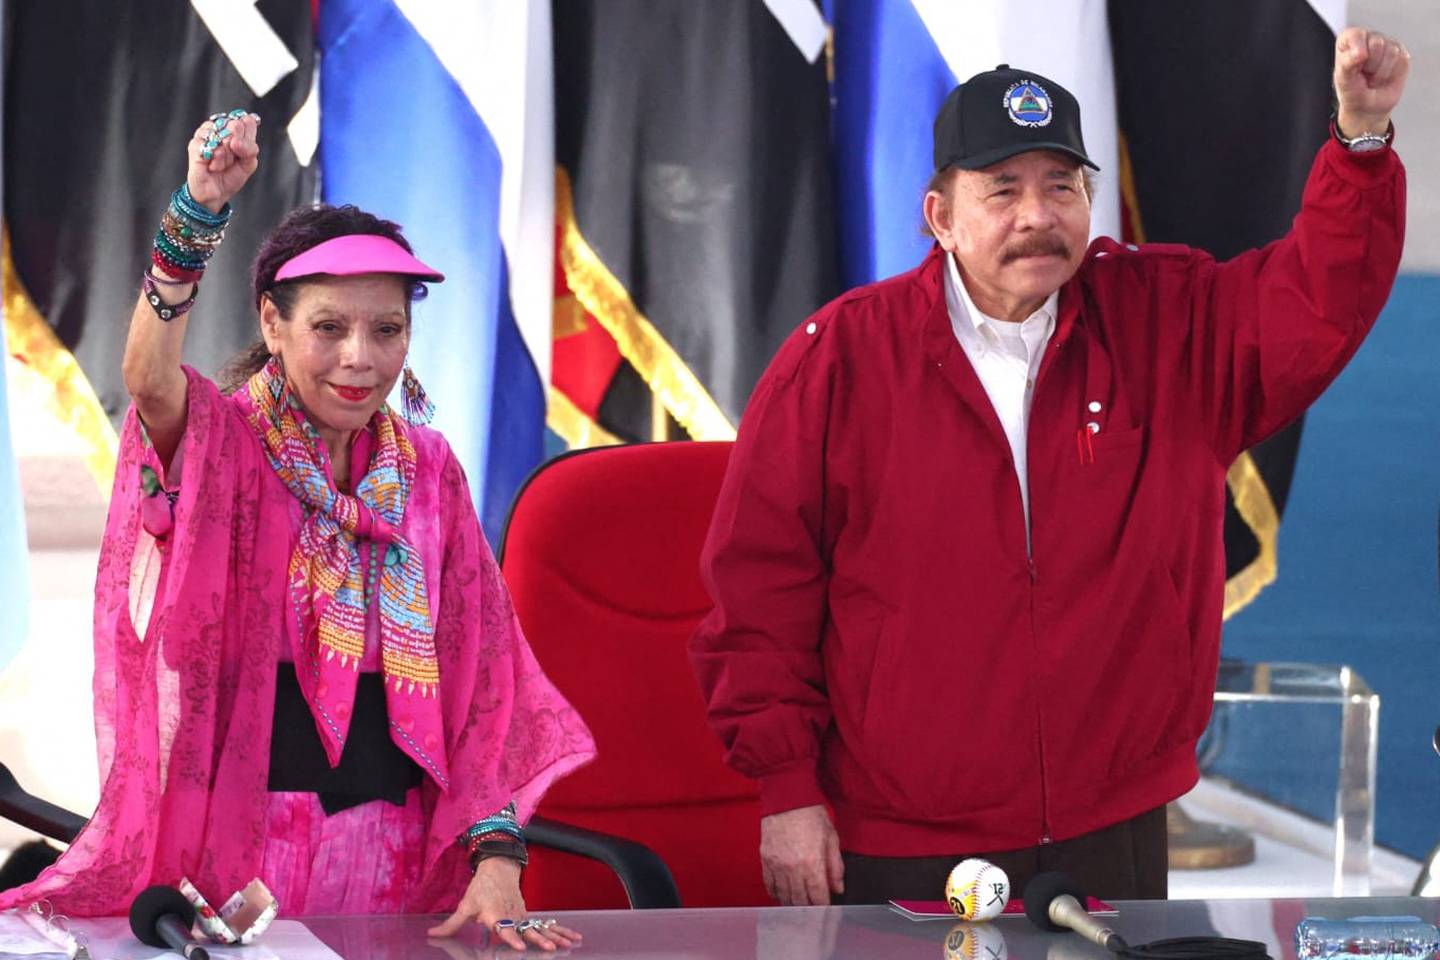 Daniel Ortega y Rosario Murillo son quienes lideran el régimen impuesto en Nicaragua. Ambos consideran que China trata con respeto a Nicaragua, sin imponer condiciones para las relaciones entre ambas naciones.